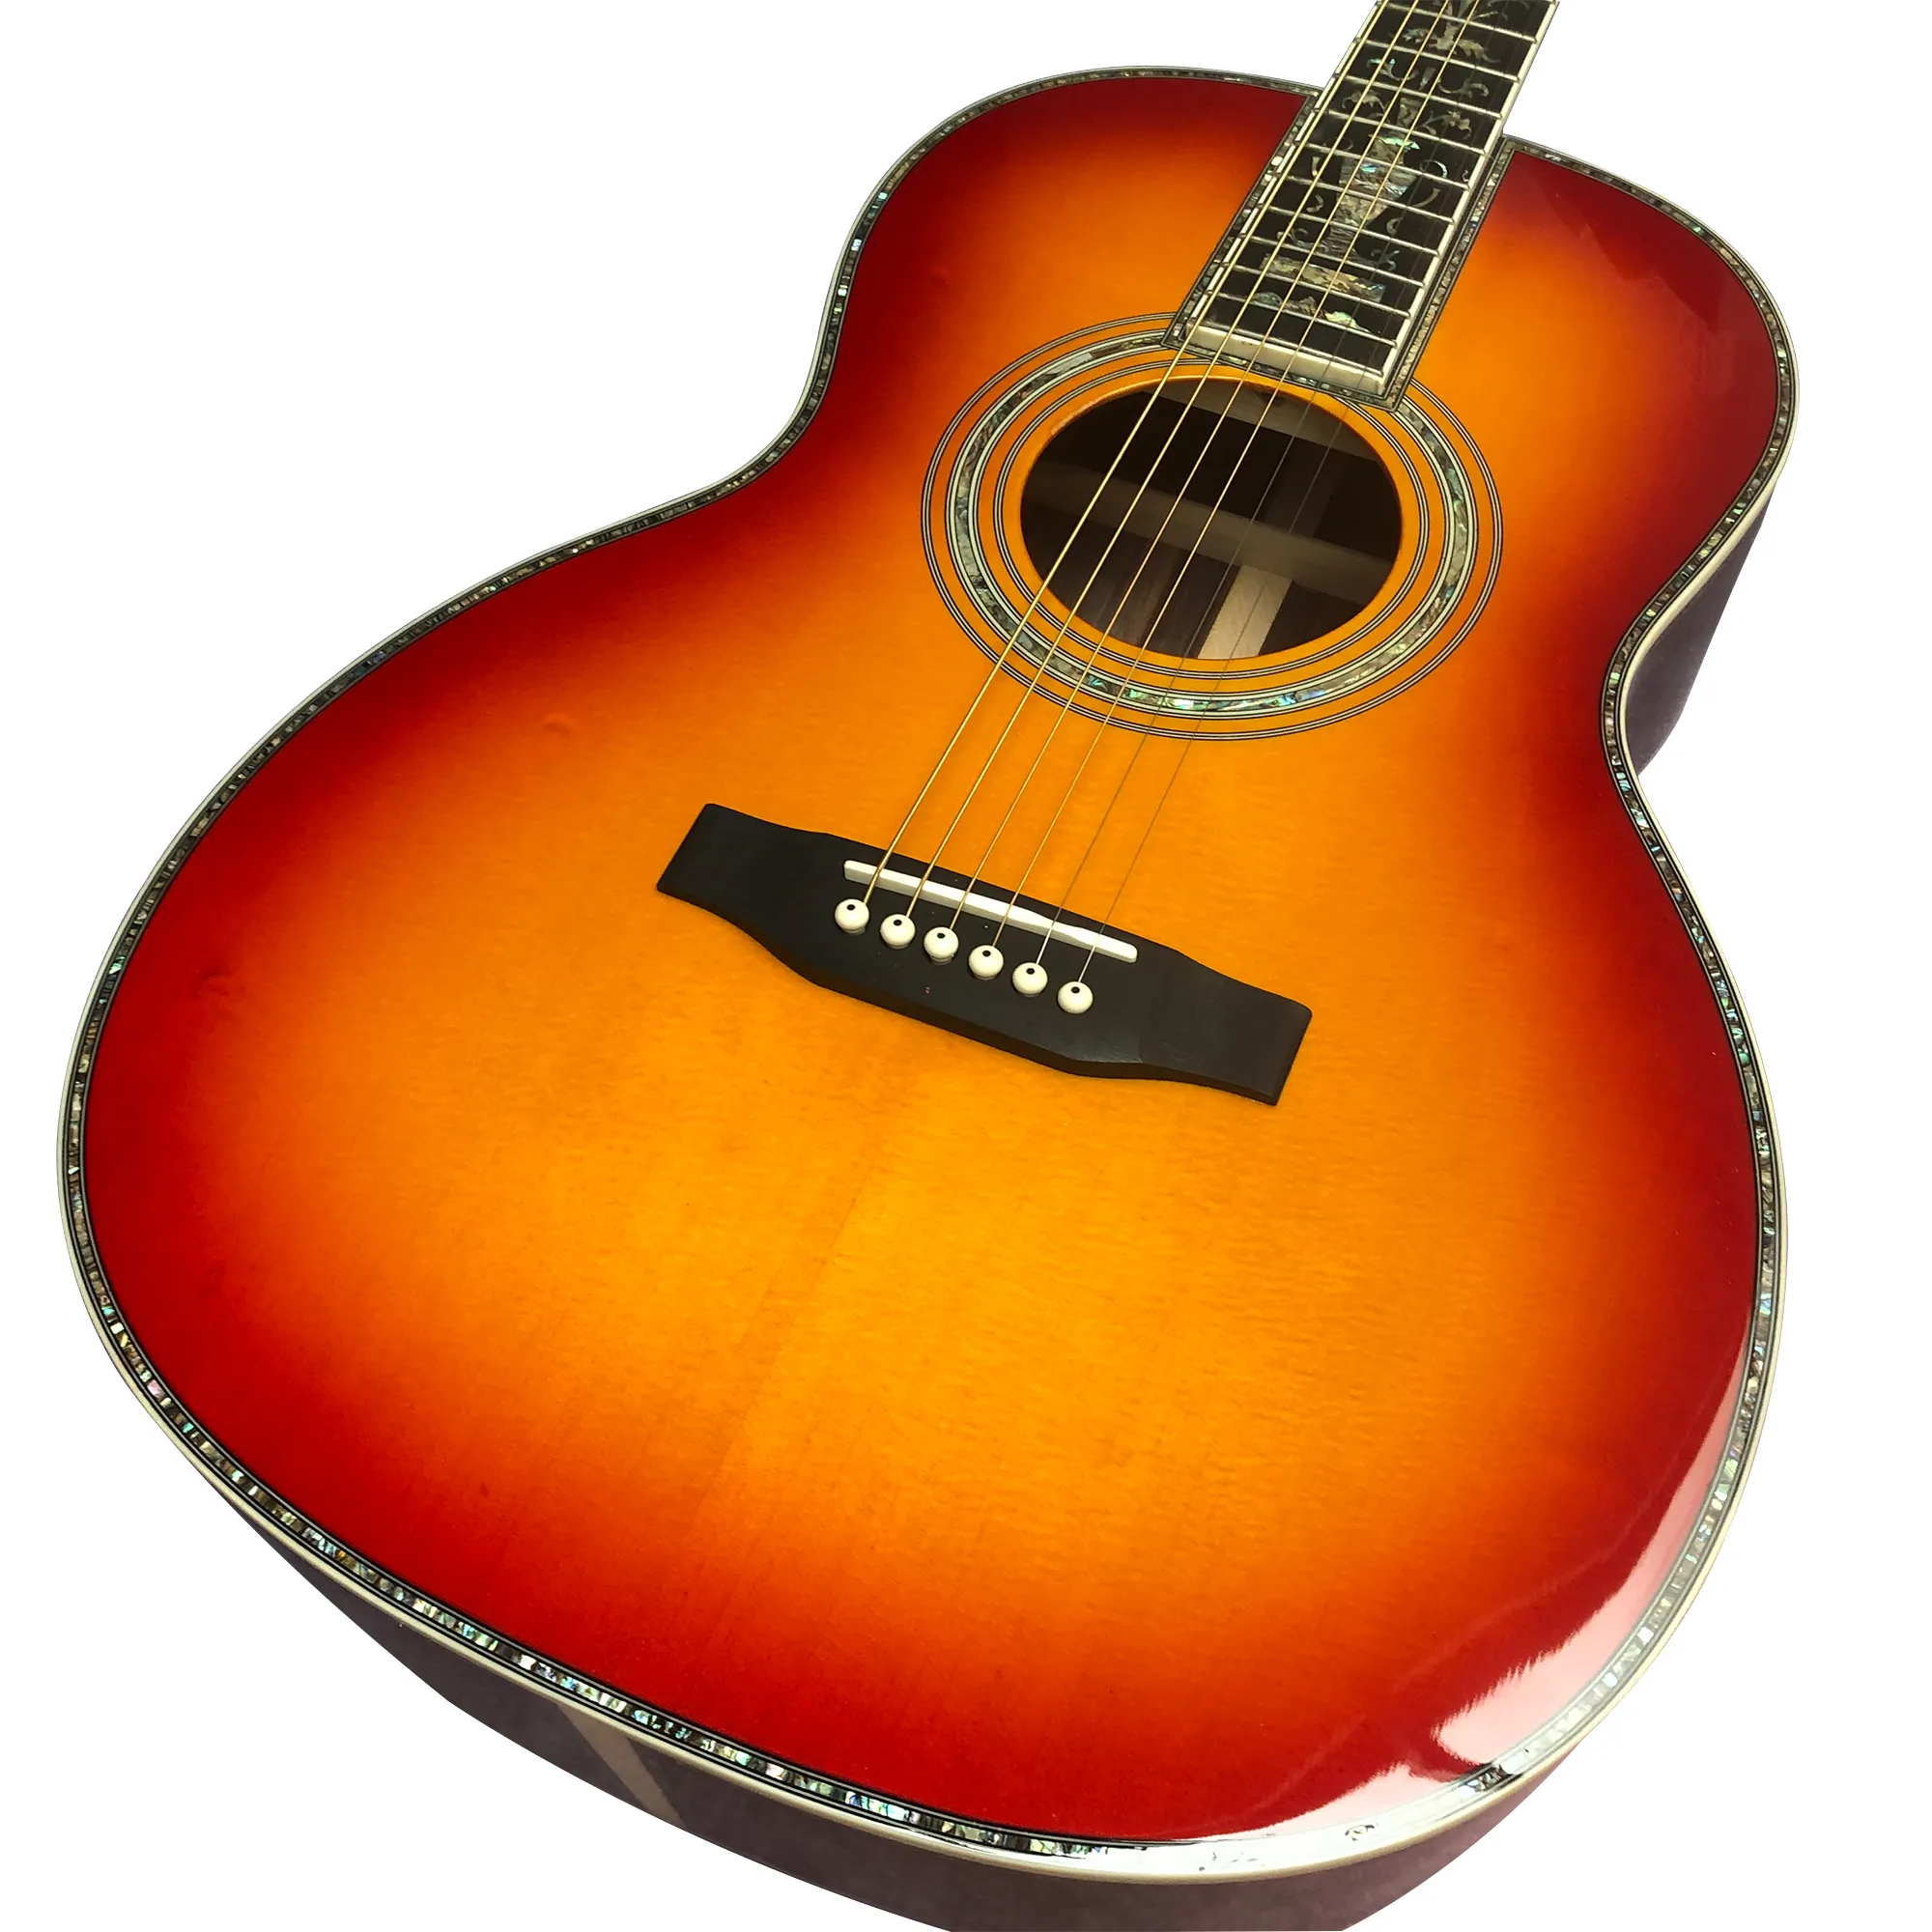 39インチOoo型sunset Red Black Fingered Abalone Shell Inlaidアコースティックギター